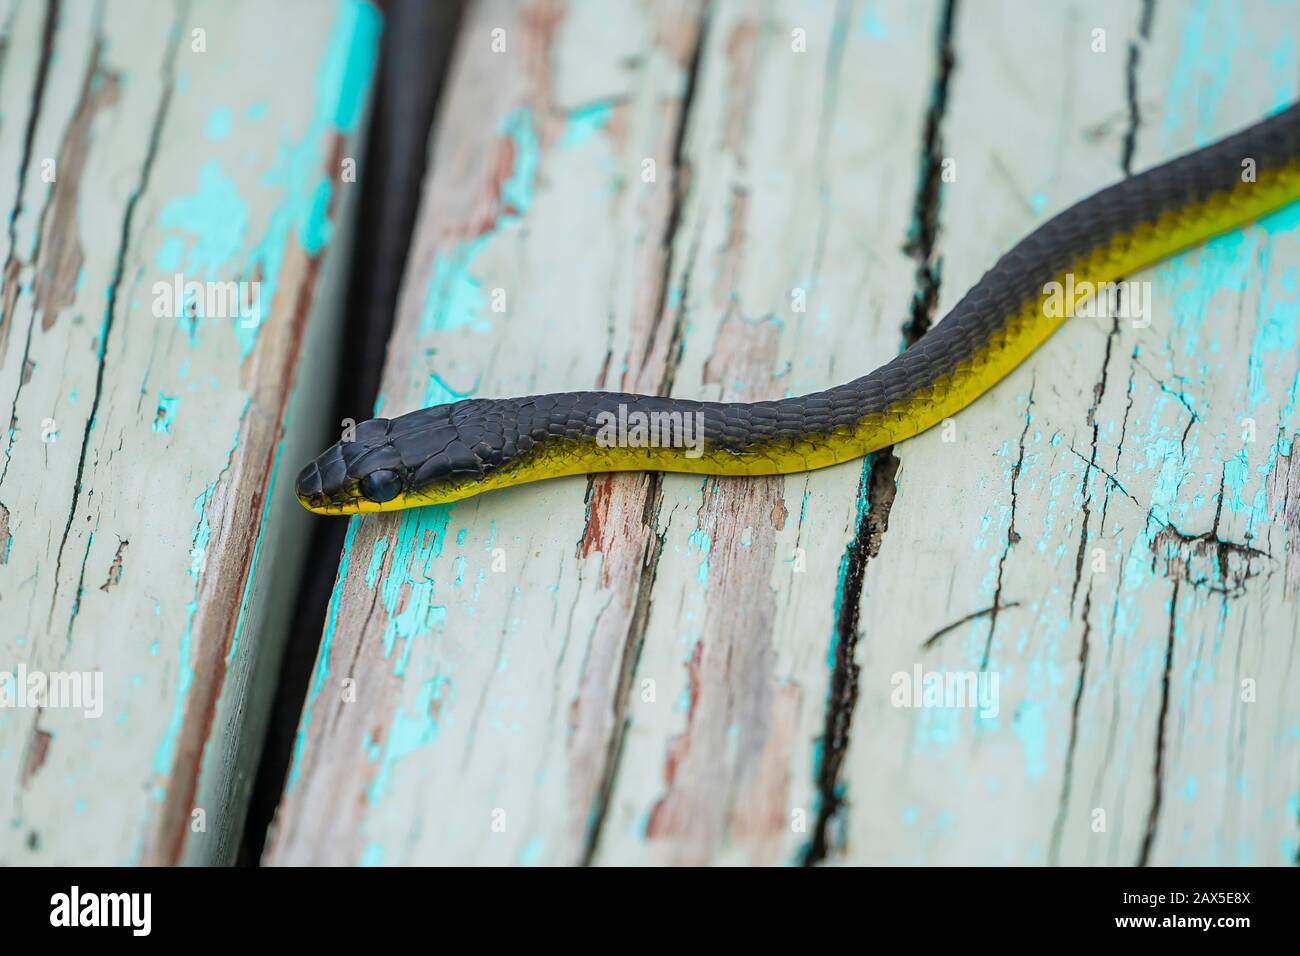 Serpiente de árbol común (Dendrelaphis puntulatus) en banco de madera viejo Foto de stock